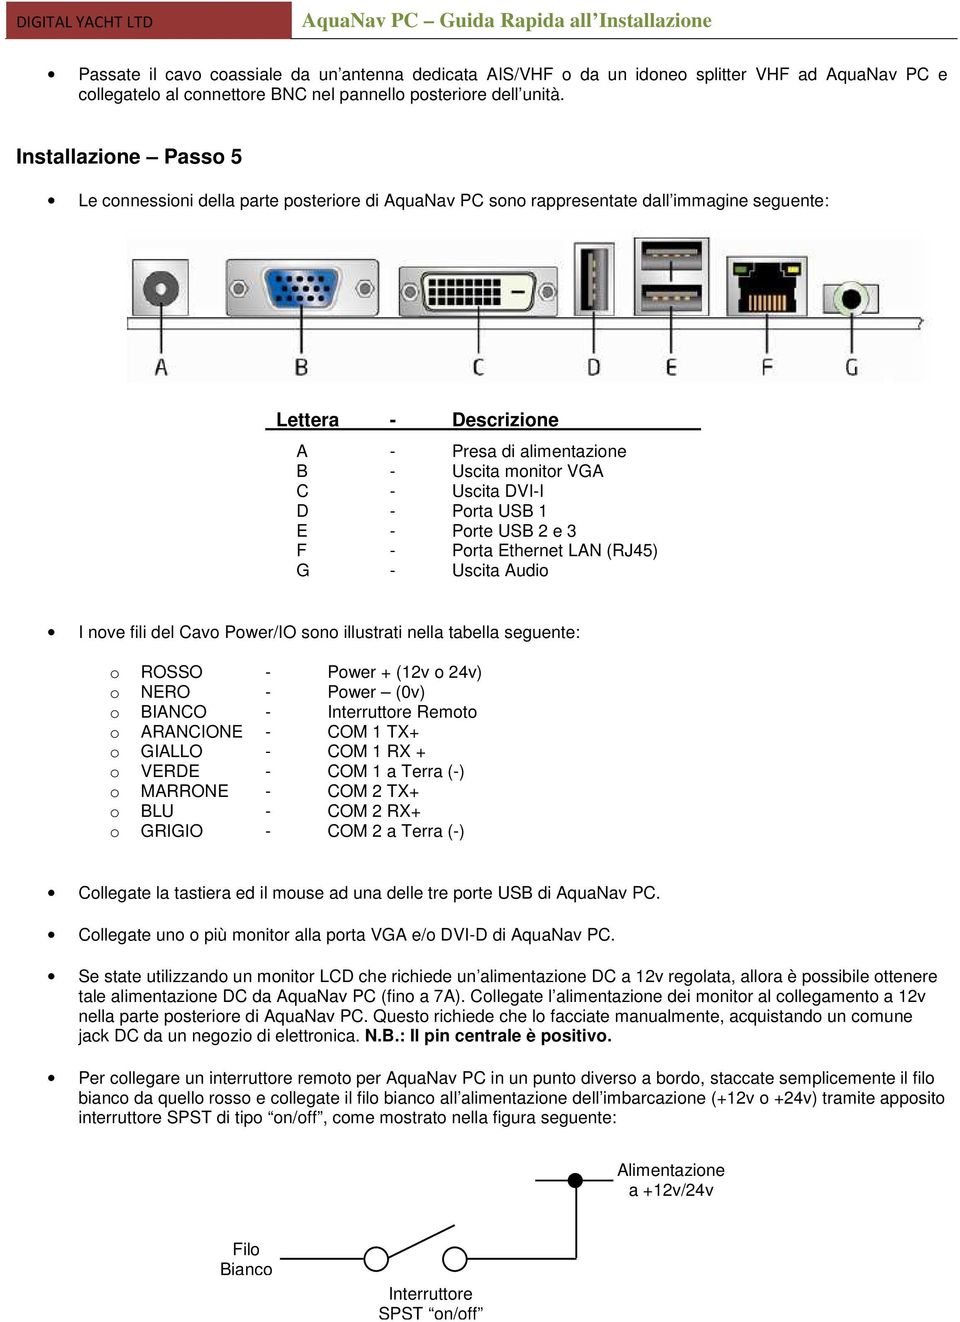 DVI-I D - Porta USB 1 E - Porte USB 2 e 3 F - Porta Ethernet LAN (RJ45) G - Uscita Audio I nove fili del Cavo Power/IO sono illustrati nella tabella seguente: o ROSSO - Power + (12v o 24v) o NERO -